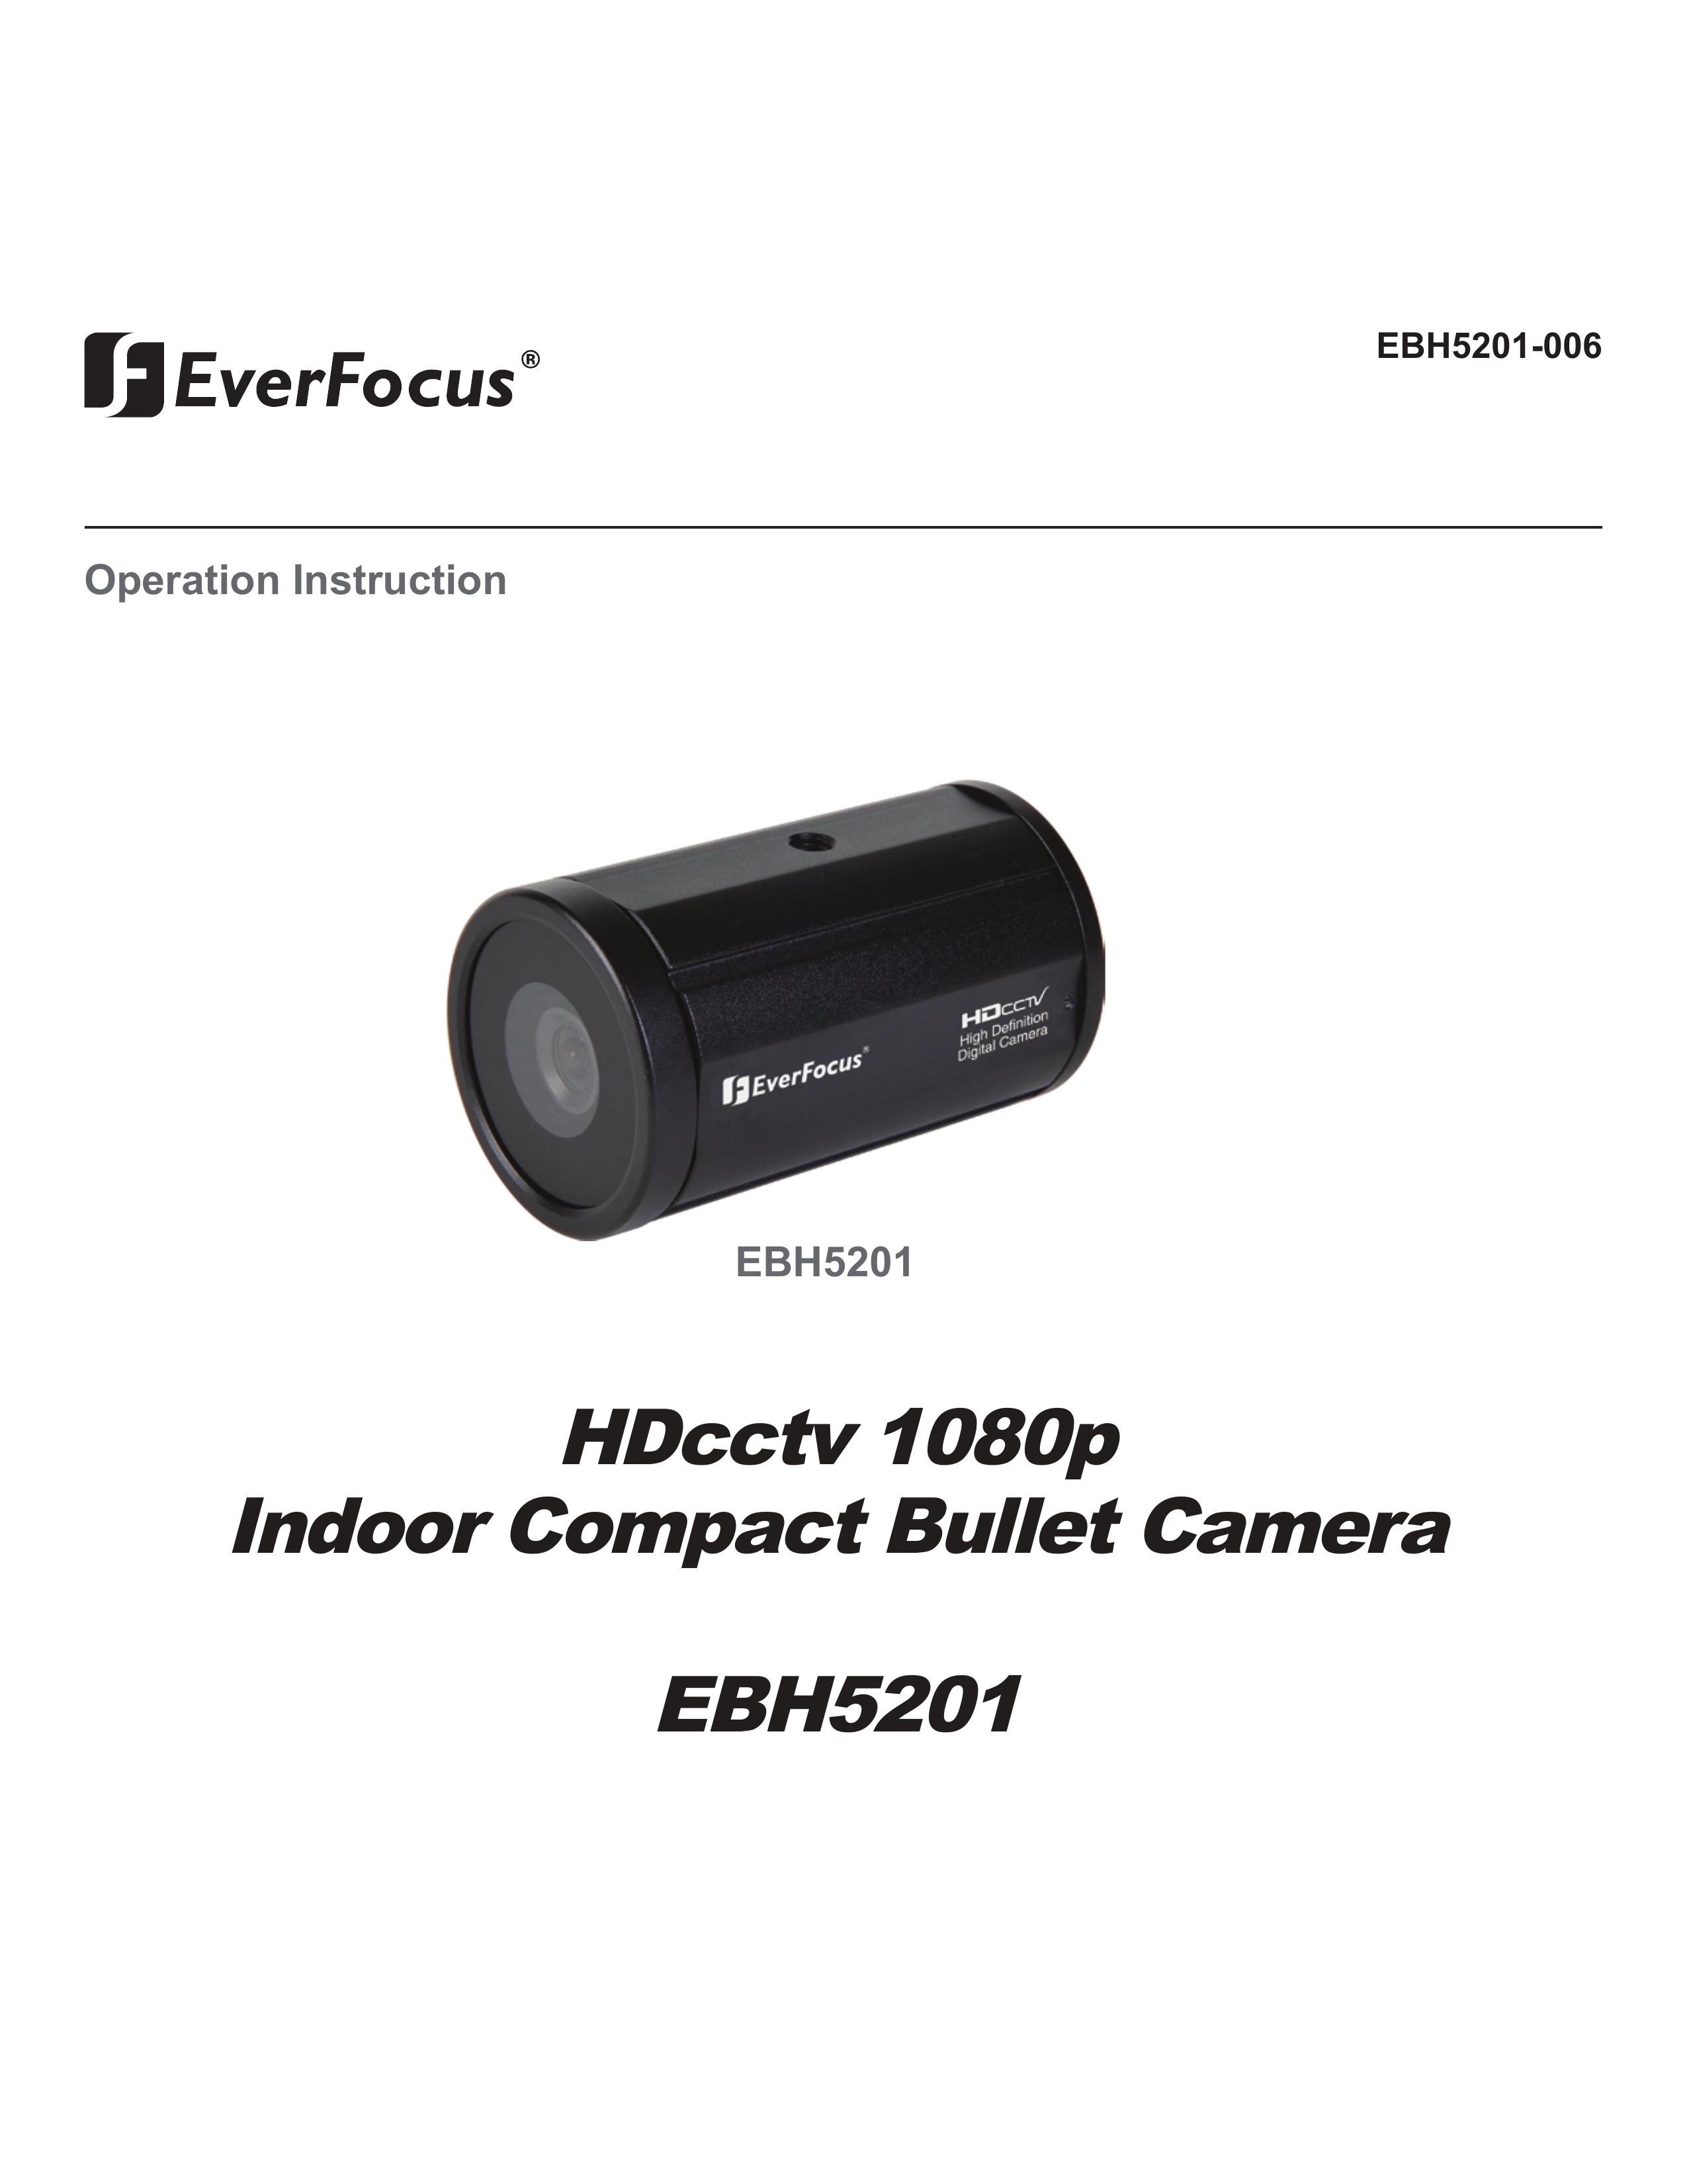 EverFocus EBH5201-006 Camera Accessories User Manual